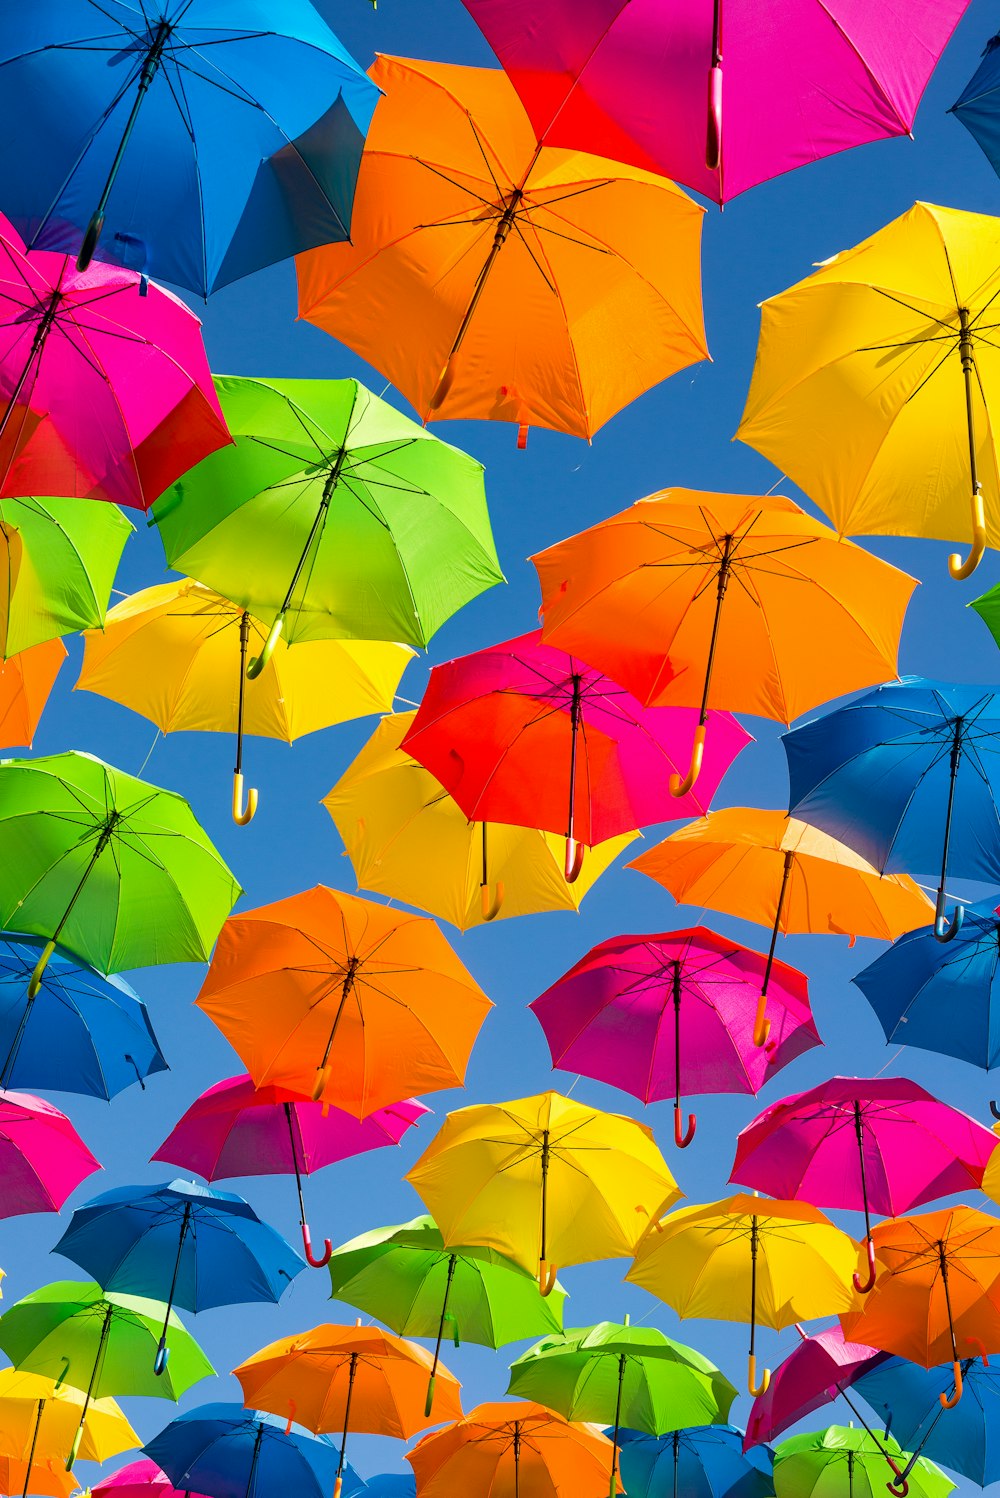 Person, die ein Foto von verschiedenfarbigen Regenschirmen macht